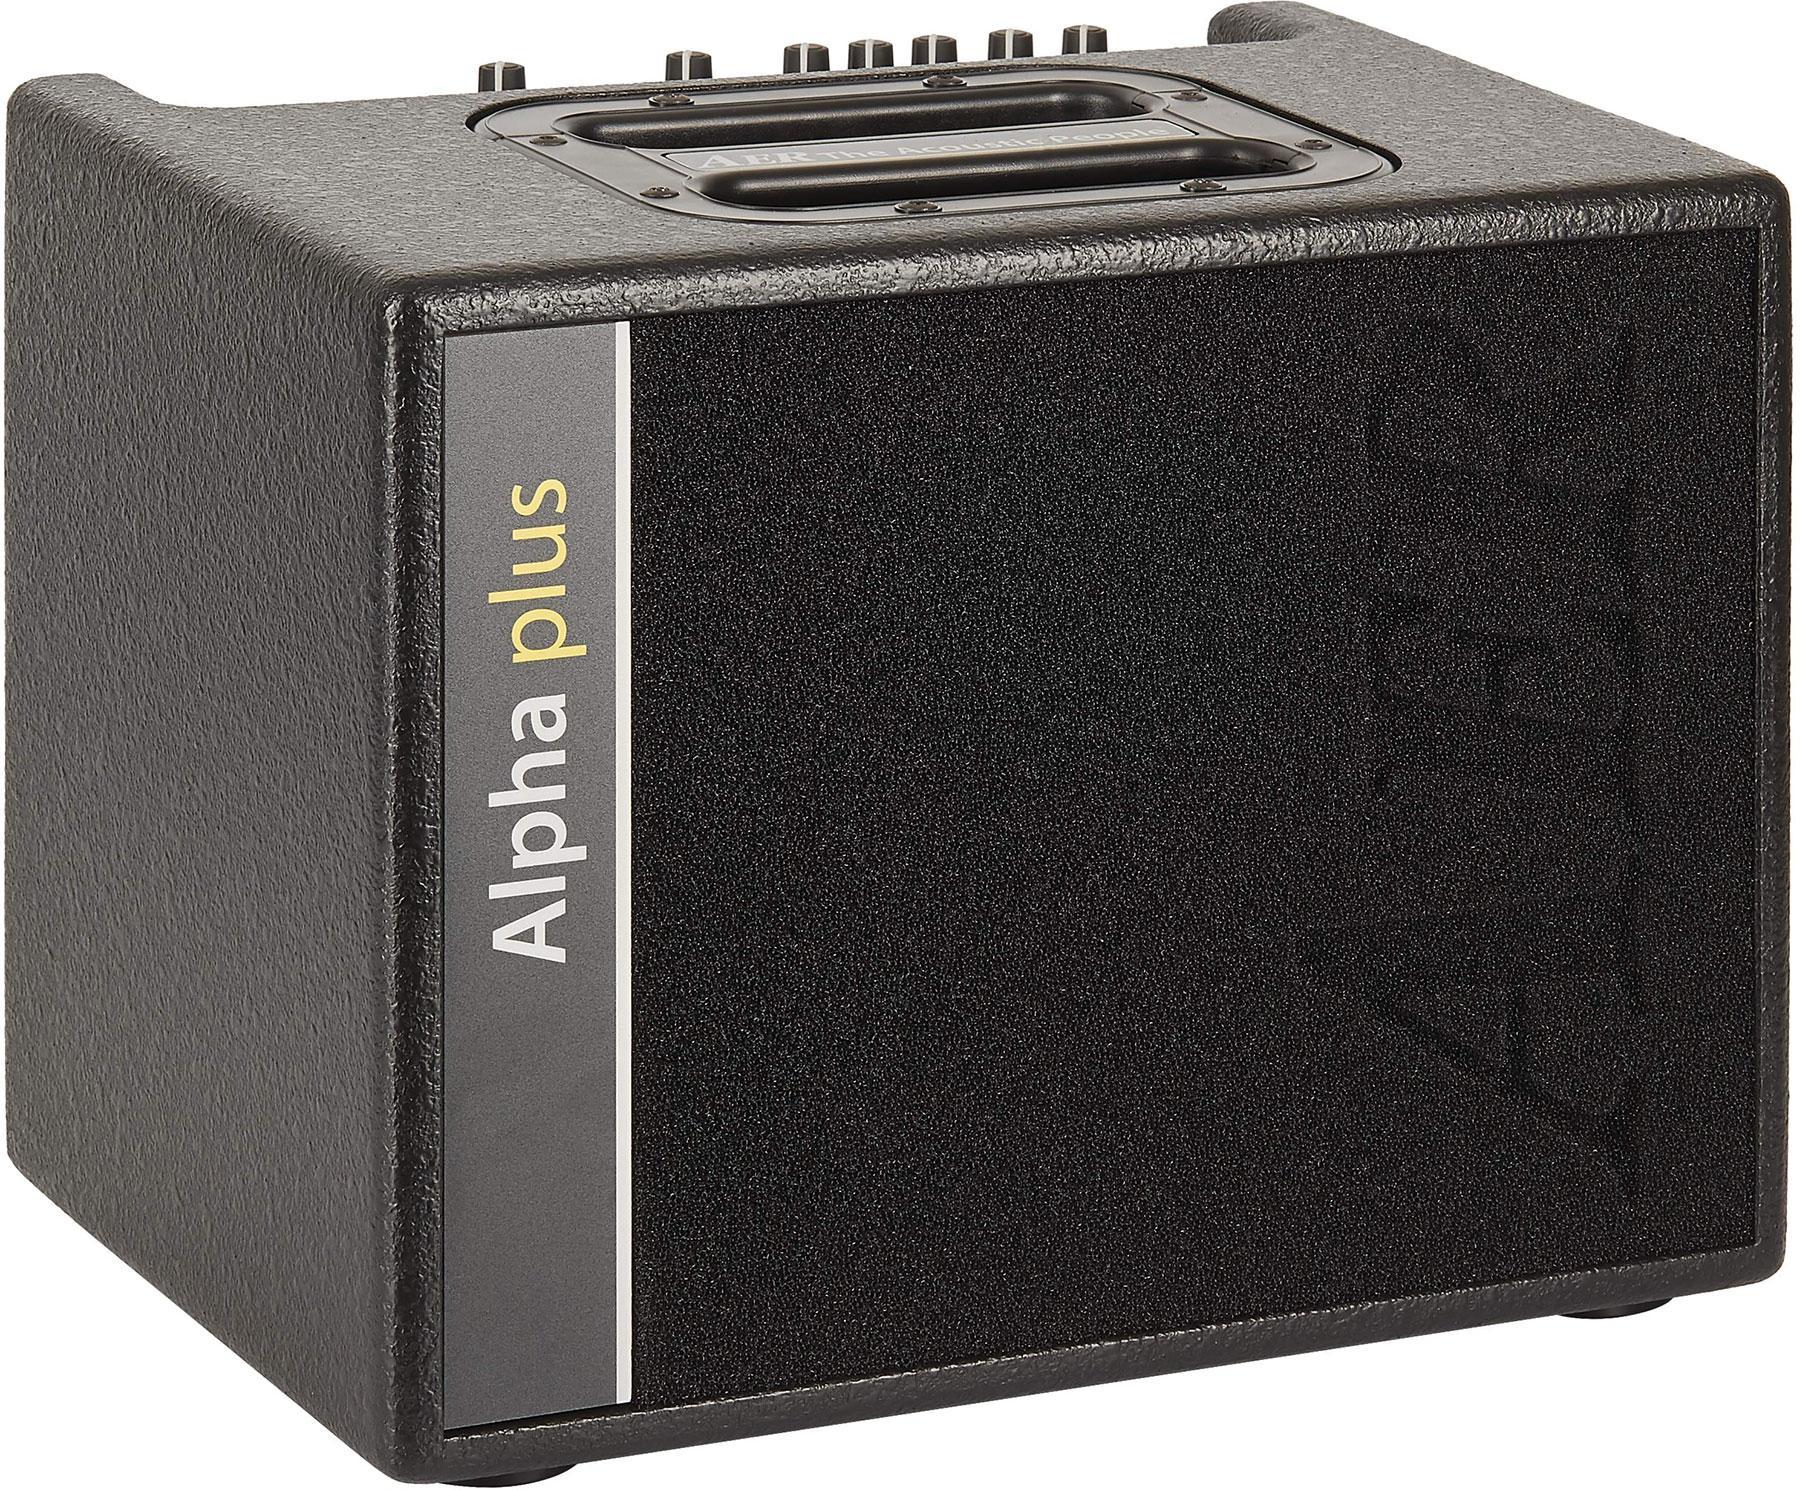 Atento Meandro seguro Combo amplificador acústico Aer Alpha Plus